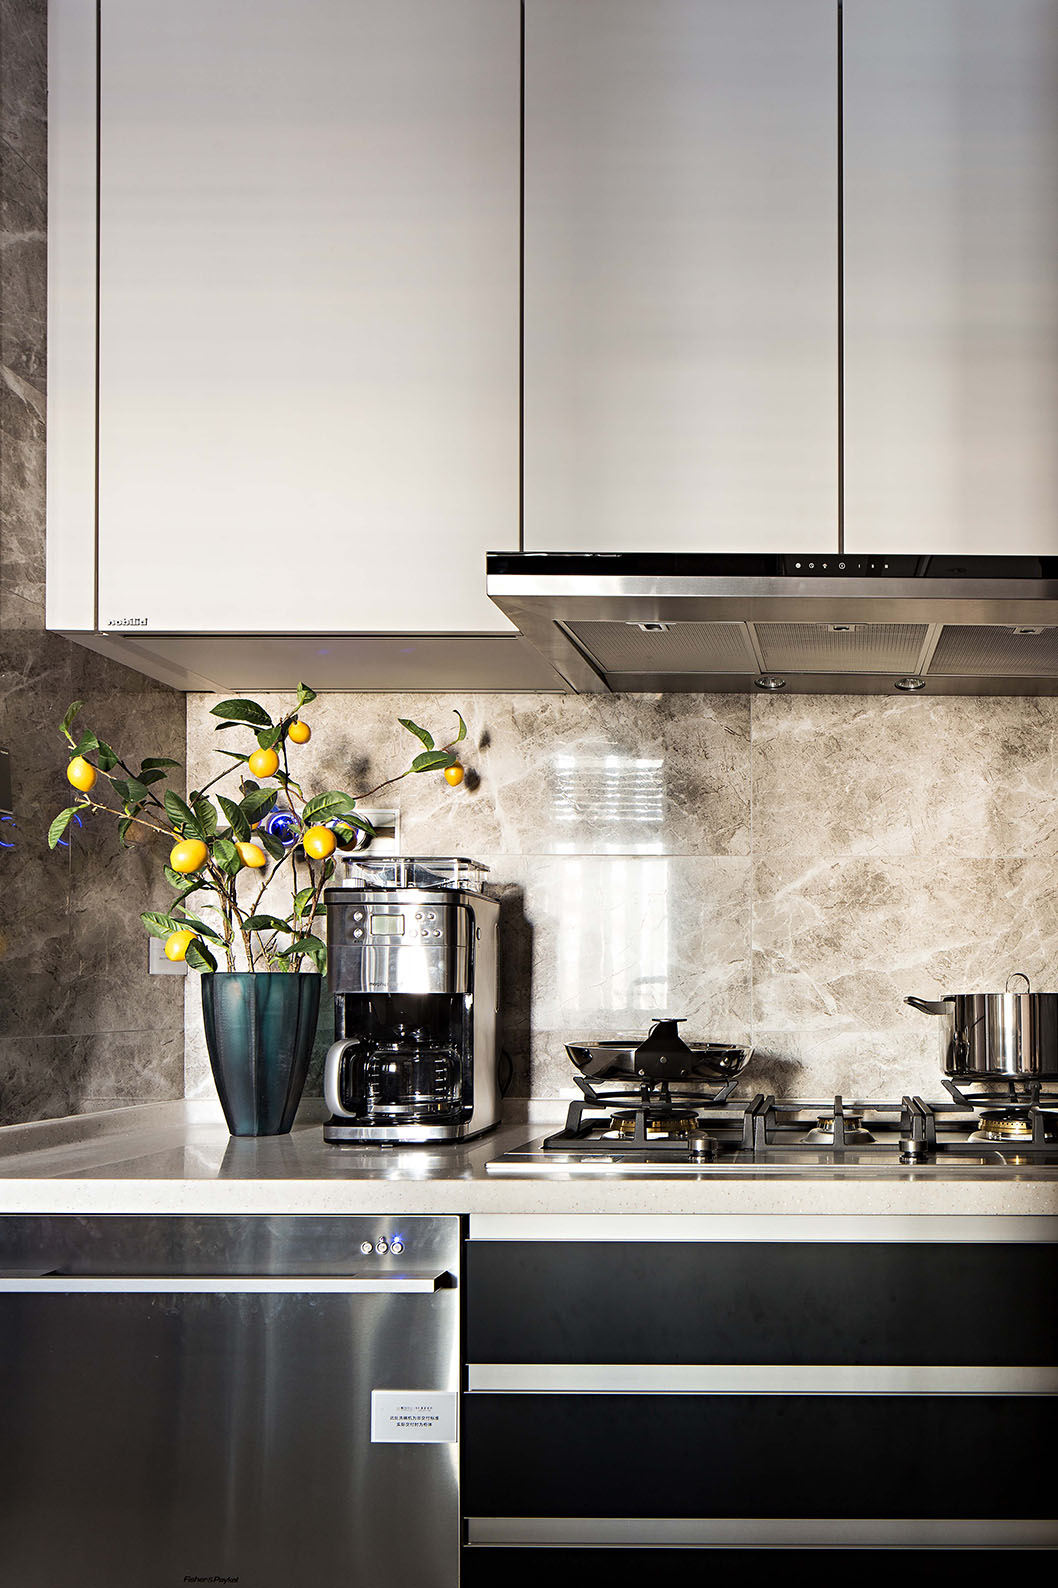 冷暖色构成了厨房区橱柜的主要表现形式，简洁利落又不乏层次感。